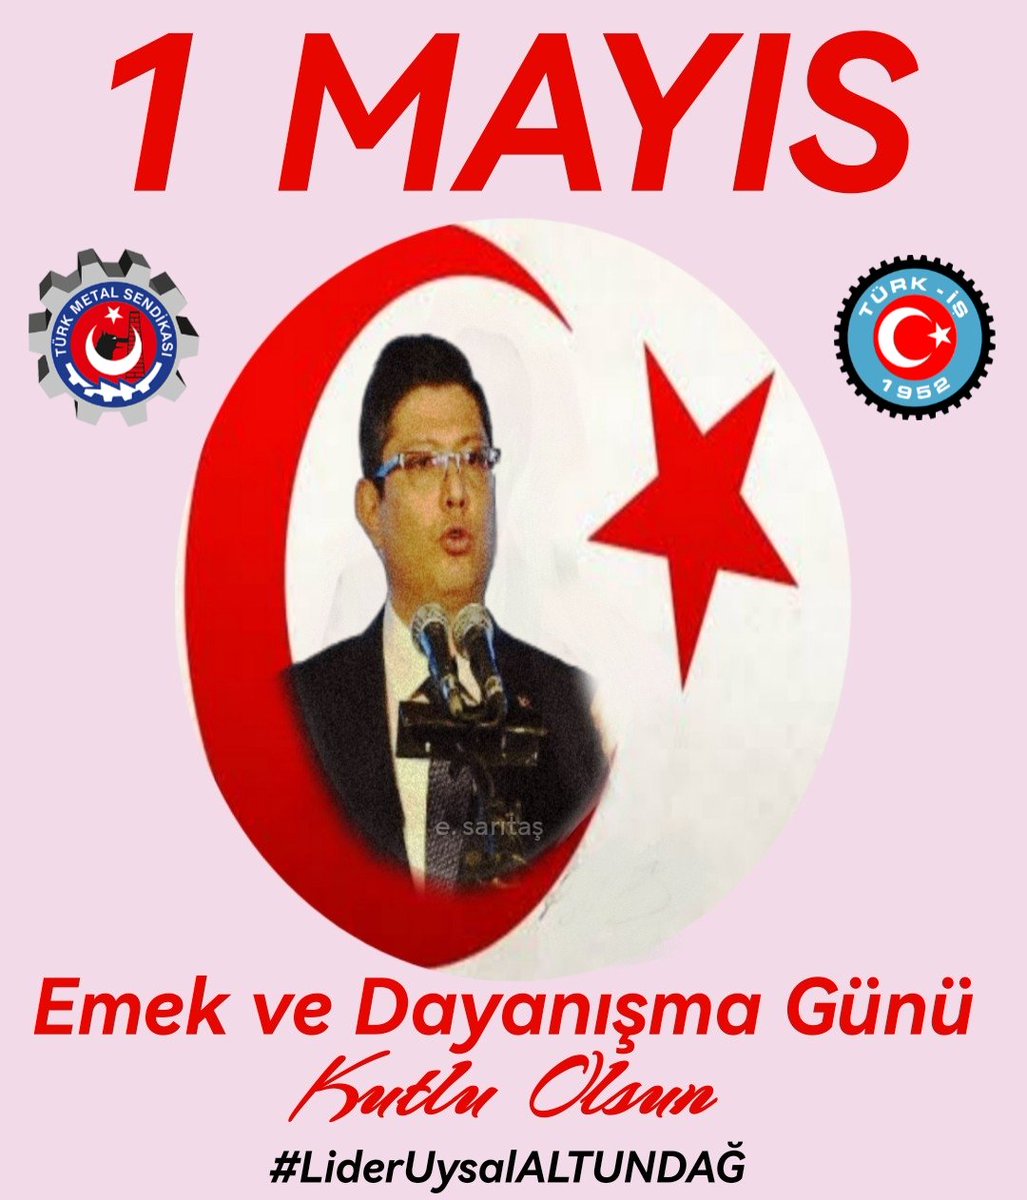 Türk İşçi Sınıfının Birlik Beraberliğinin sembolü, Türk işçisinin gür sesini tek yürek olup duyurdugu 1 Mayıs Emek ve Dayanışma, İşçi Bayramınızı en içten dileklerimizle kutlarız
Yaşasın 1 Mayıs!..
#Türkmetal
#LiderUysalALTUNDAĞ
#Yaşasın1Mayıs
#HepimizBiriz